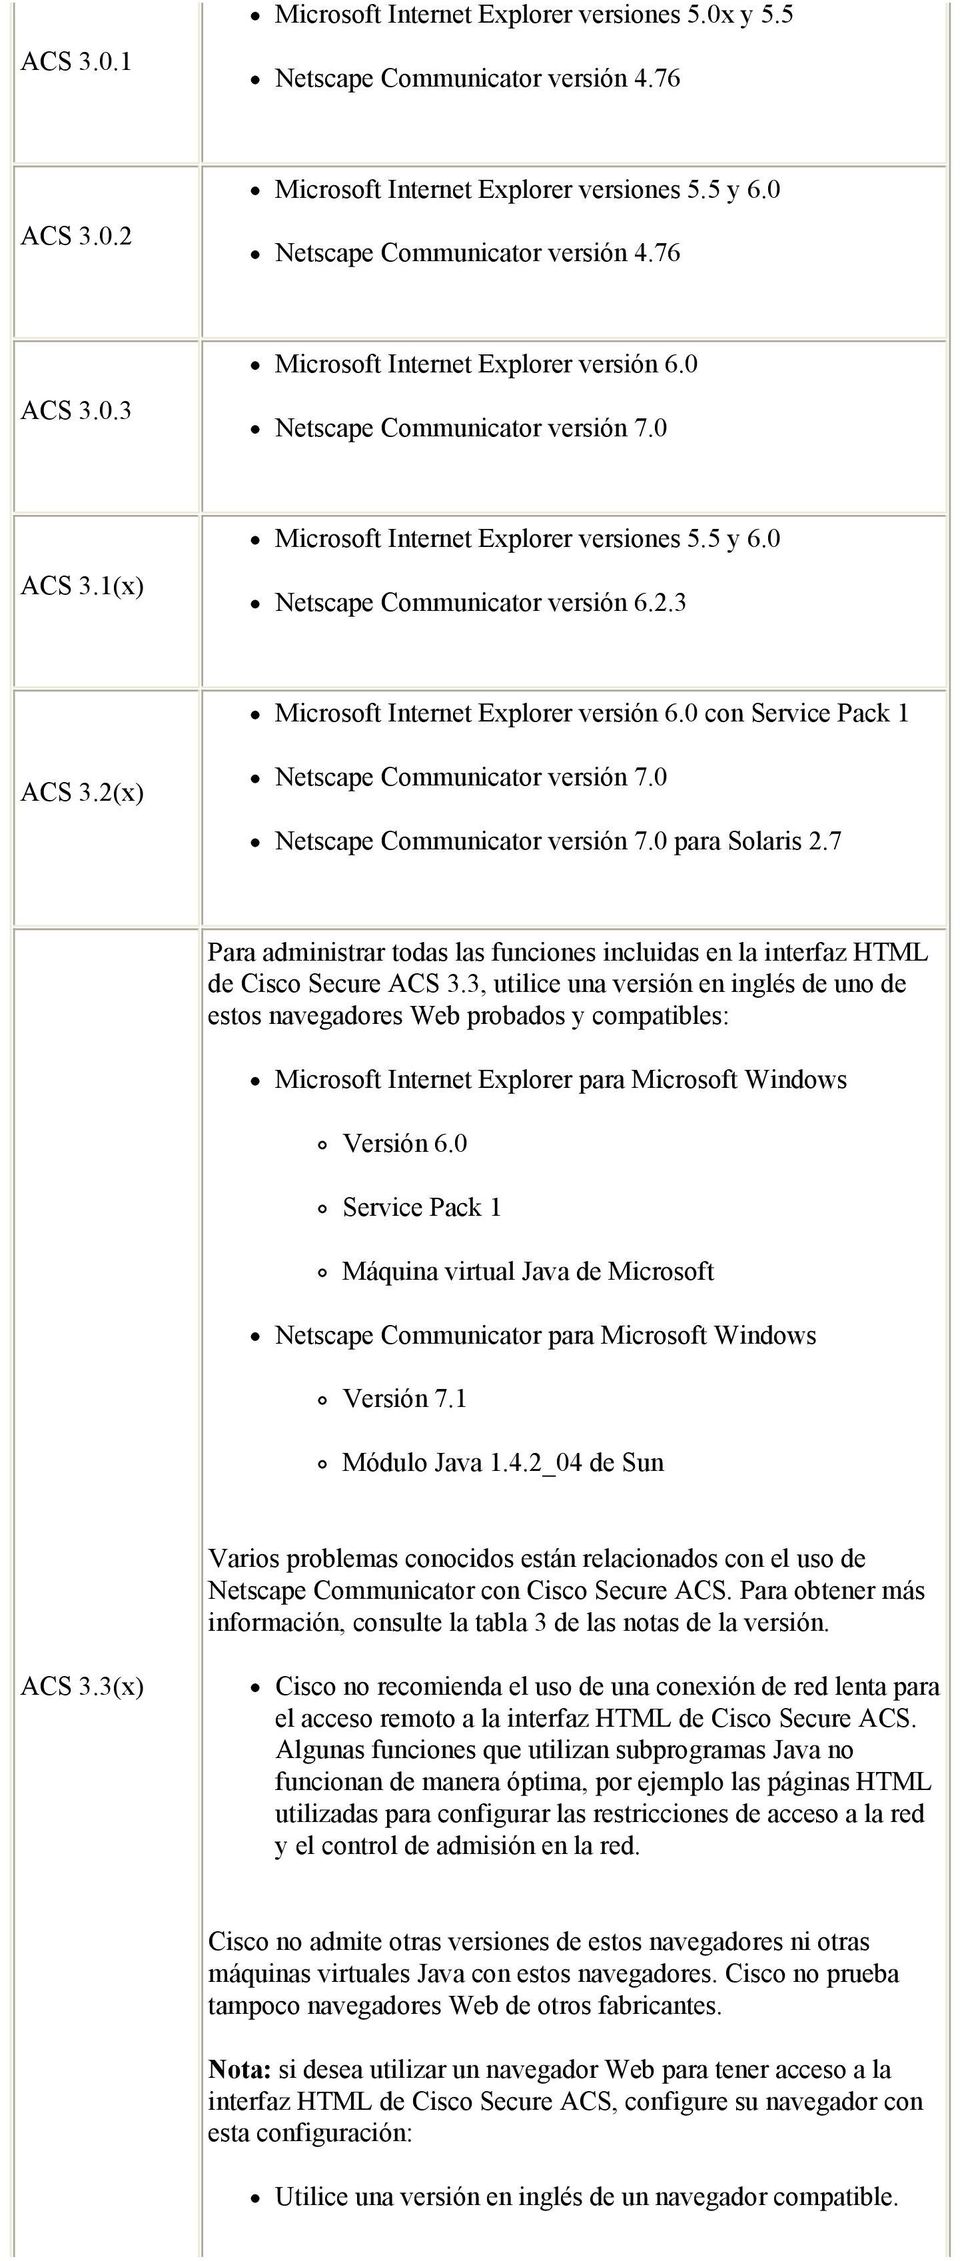 2(x) Netscape Communicator versión 7.0 Netscape Communicator versión 7.0 para Solaris 2.7 Para administrar todas las funciones incluidas en la interfaz HTML de Cisco Secure ACS 3.